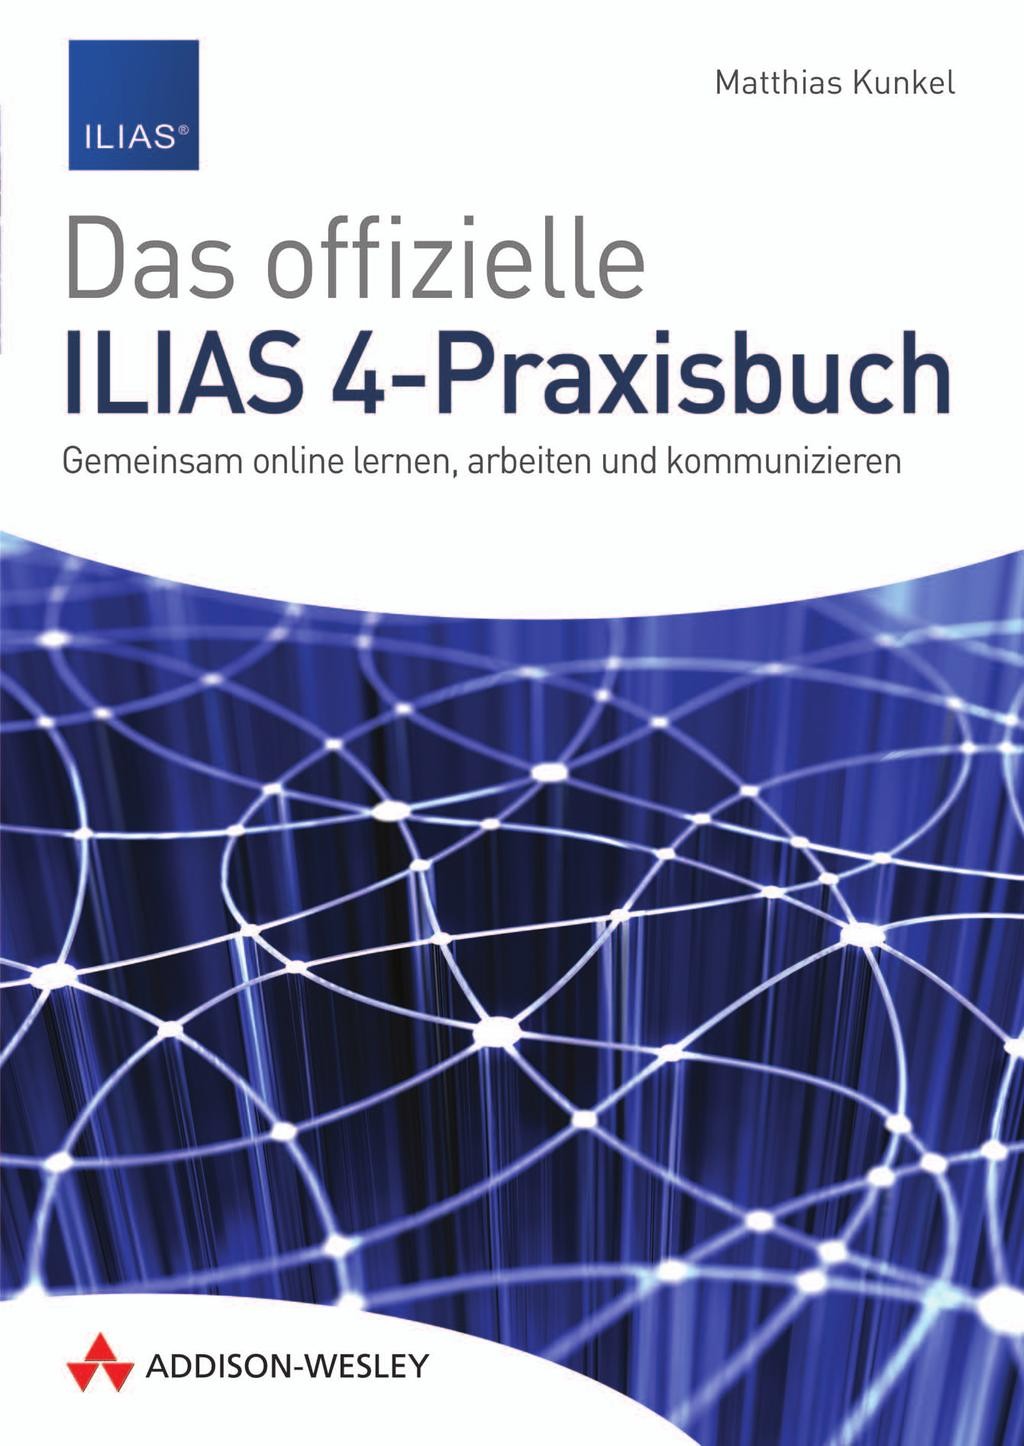 Das offizielle ILIAS 4-Praxisbuch: Gemeinsam online lernen, arbeiten und kommunizieren